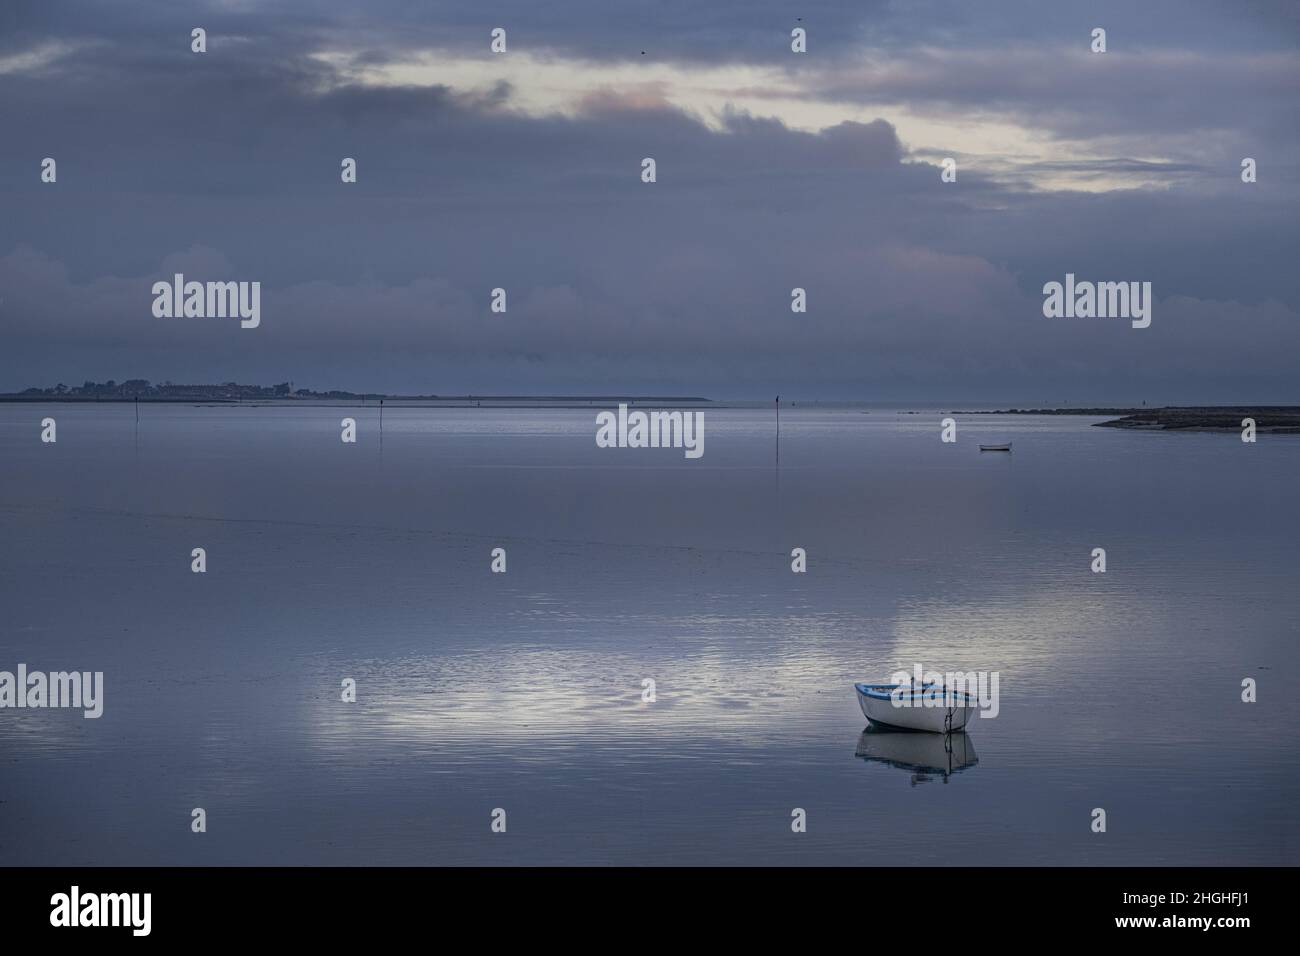 Saint Valery sur Somme, baie de Somme, chenal et reflets dans l'eau, Stock Photo